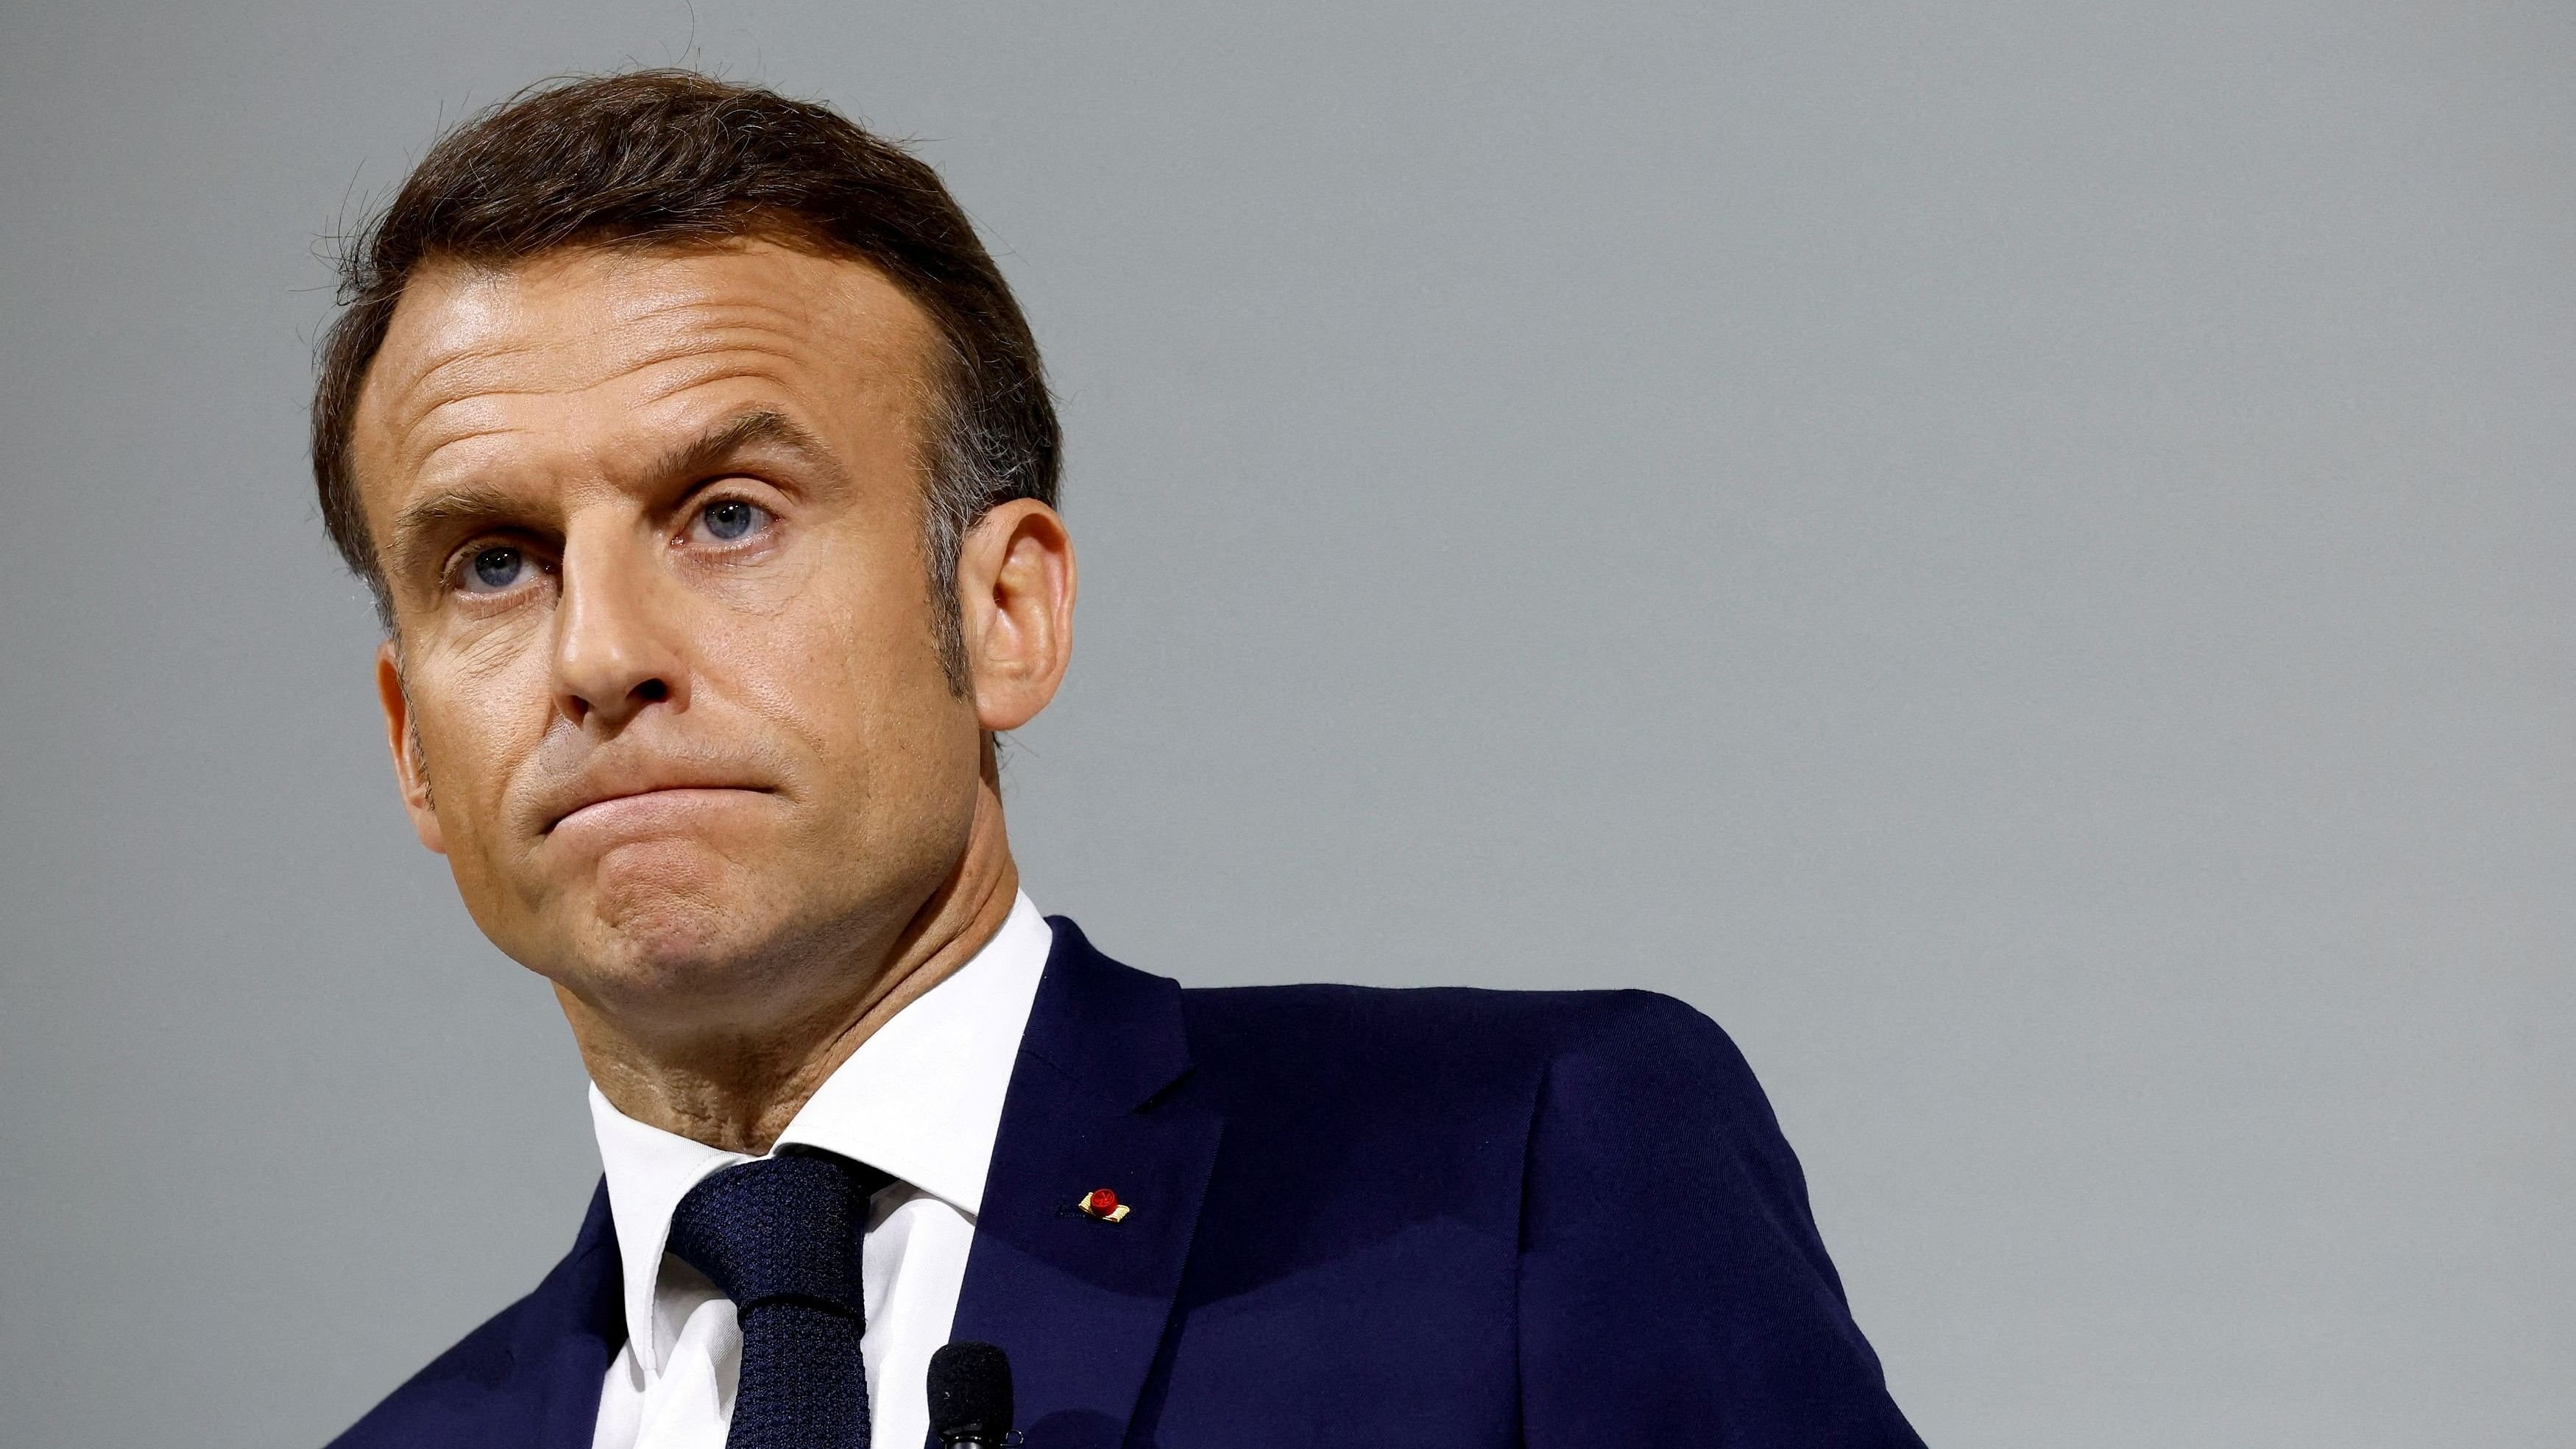 <div class="paragraphs"><p>Emmanuel Macron</p></div>